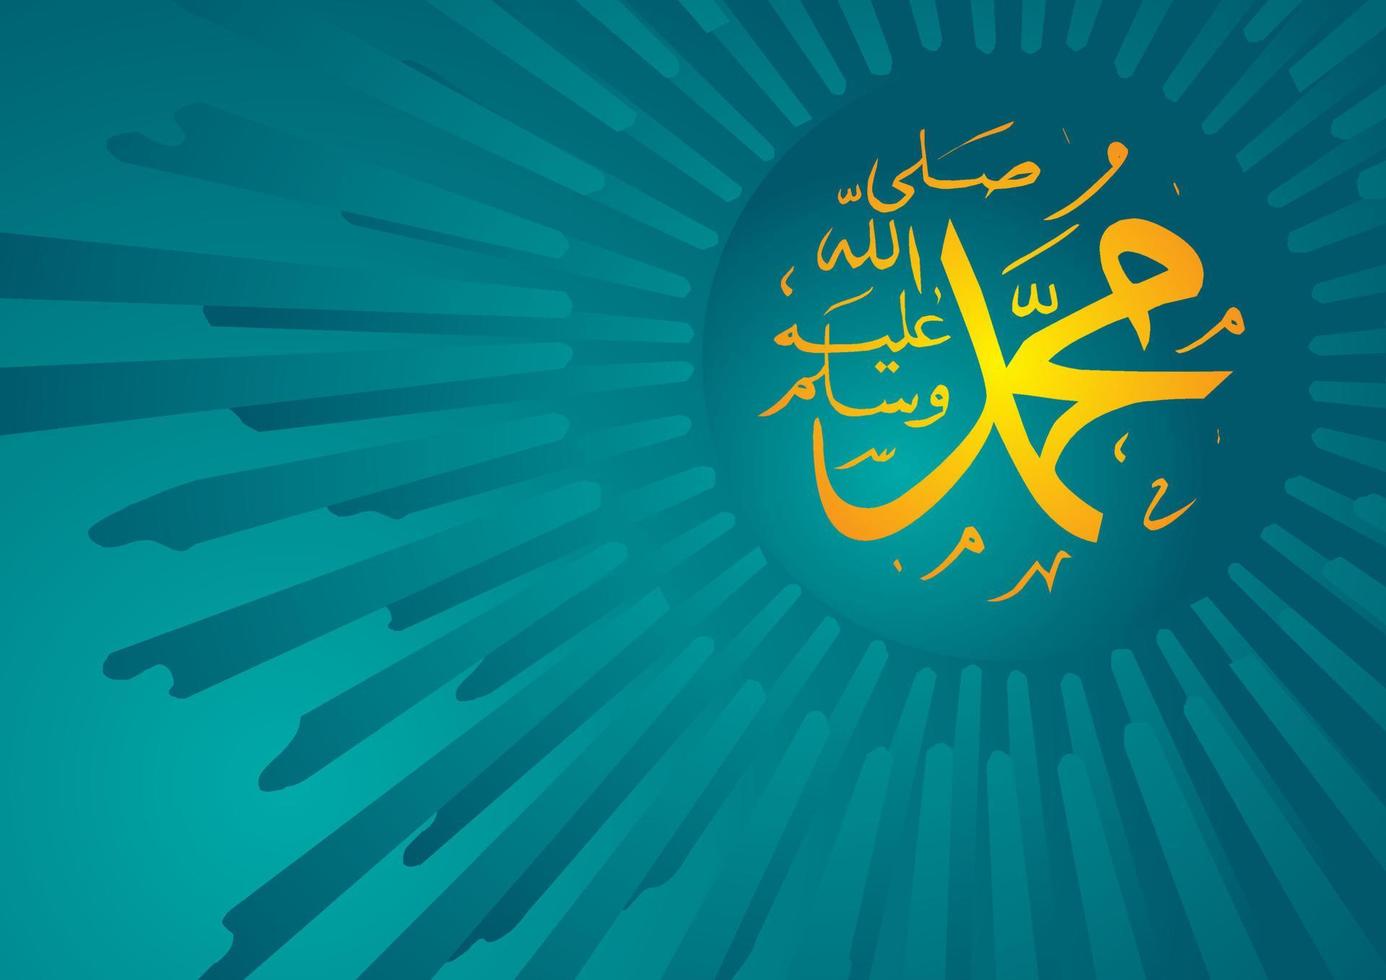 arabiska och islamiska kalligrafi av profeten Muhammed fred vare med honom traditionell och modern islamisk konst kan användas för många ämnen som mawlid, el nabawi. översättning profeten Muhammed vektor